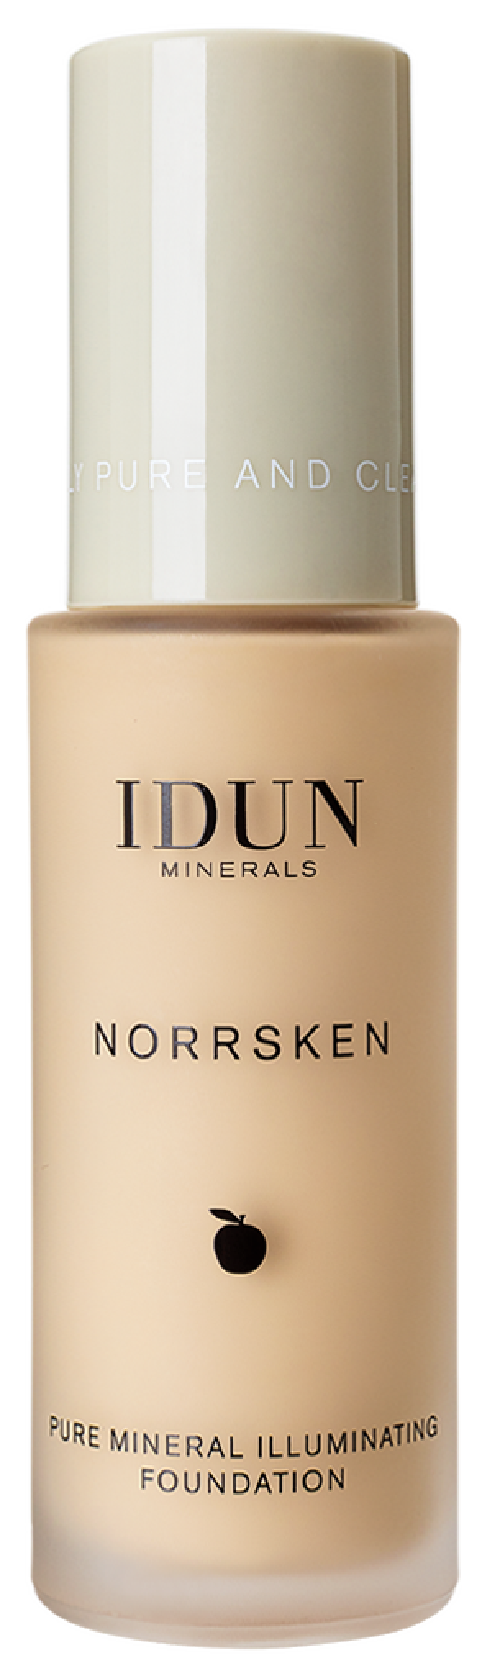 IDUN Minerals Norrsken Pure Mineral Illuminating Foundation, Freja, Lys/medium, 30 ml